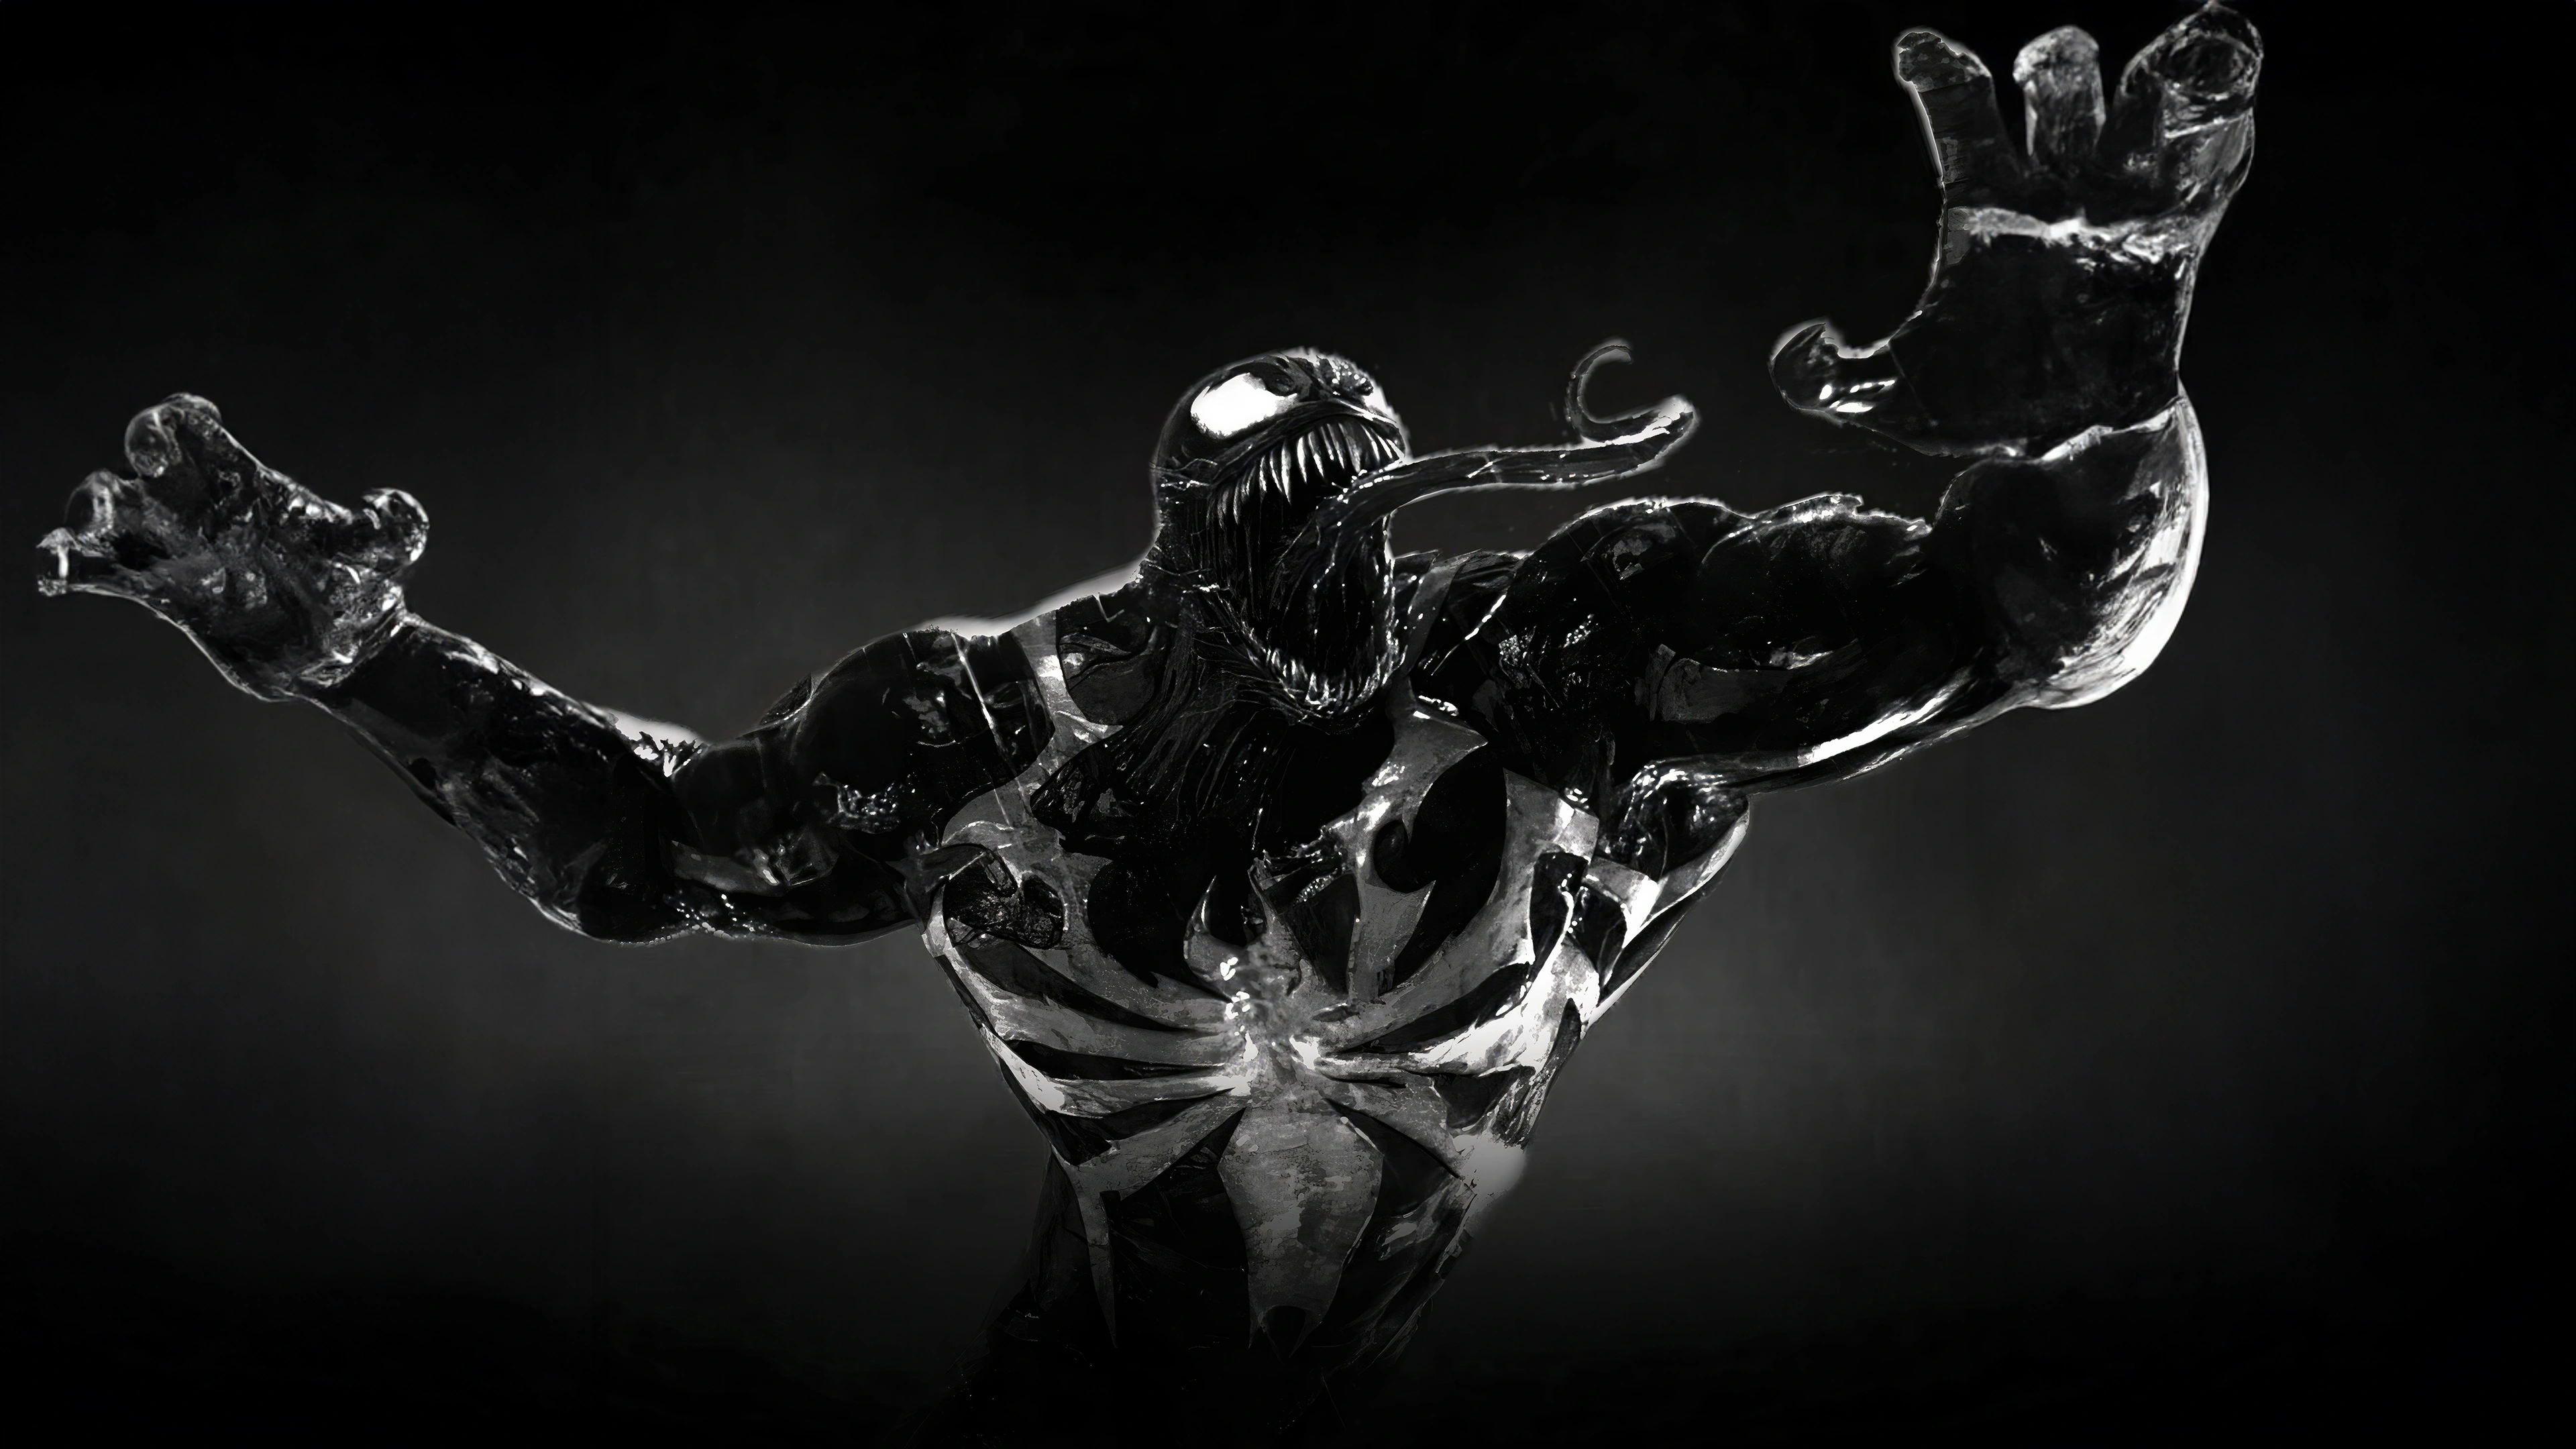 venom unleashed marvels spider man 2 fw.jpg